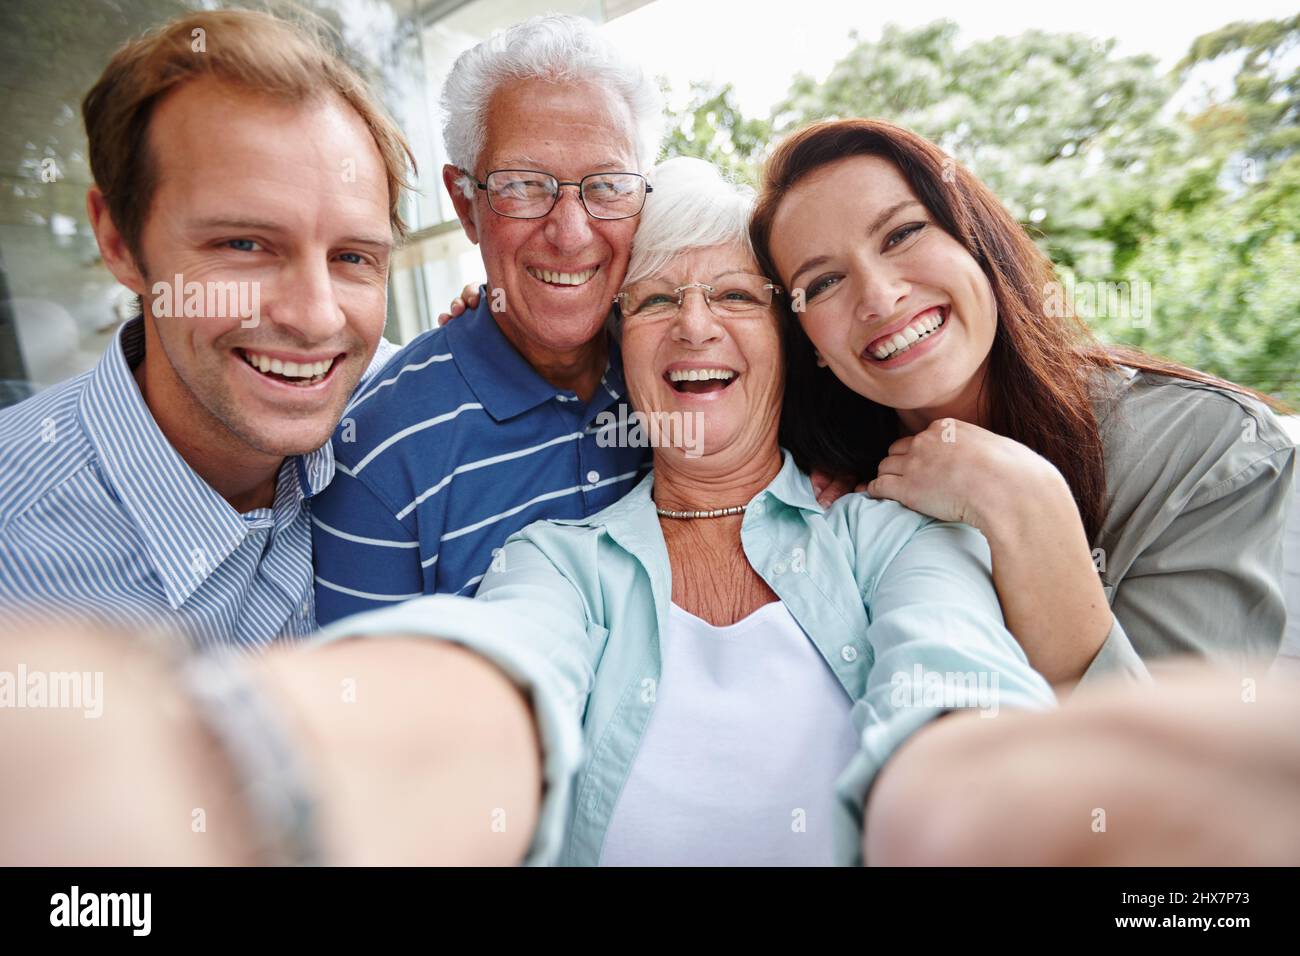 La génération des selfies. Prise de vue courte de quatre adultes prenant un selfie familial. Banque D'Images